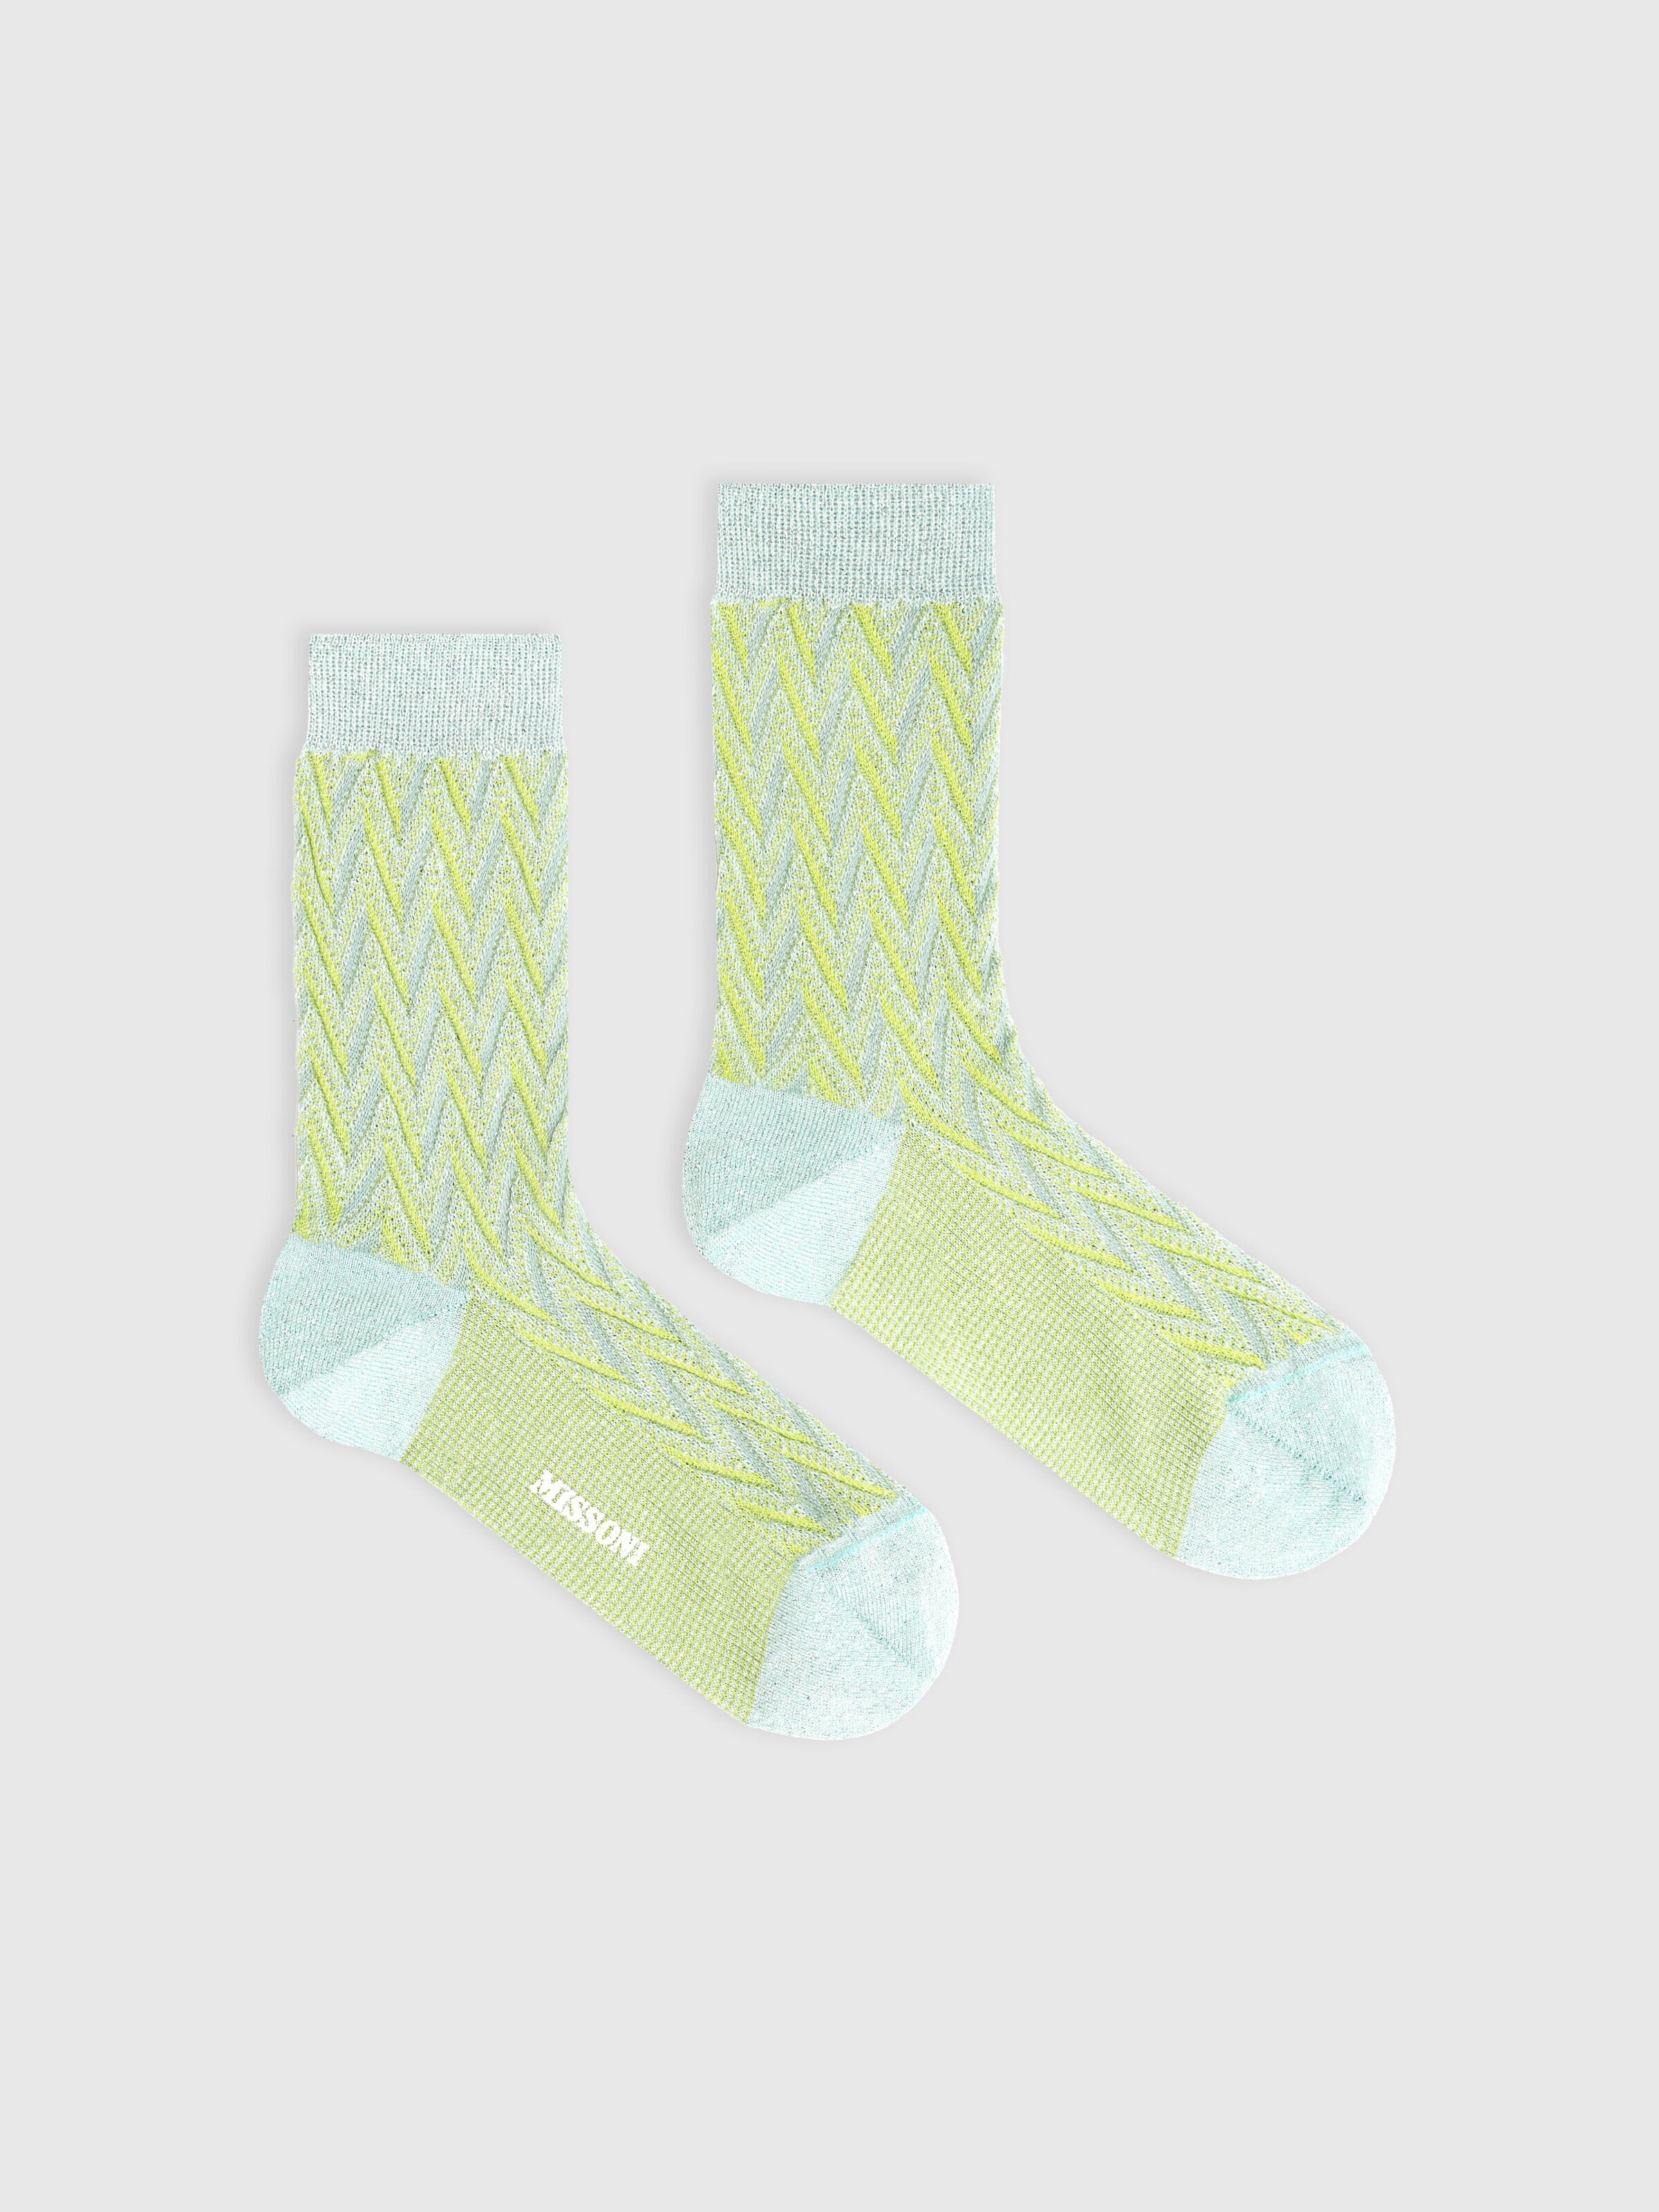 Socken aus Baumwolle und Nylon mit Chevronmuster, Mehrfarbig  - 0